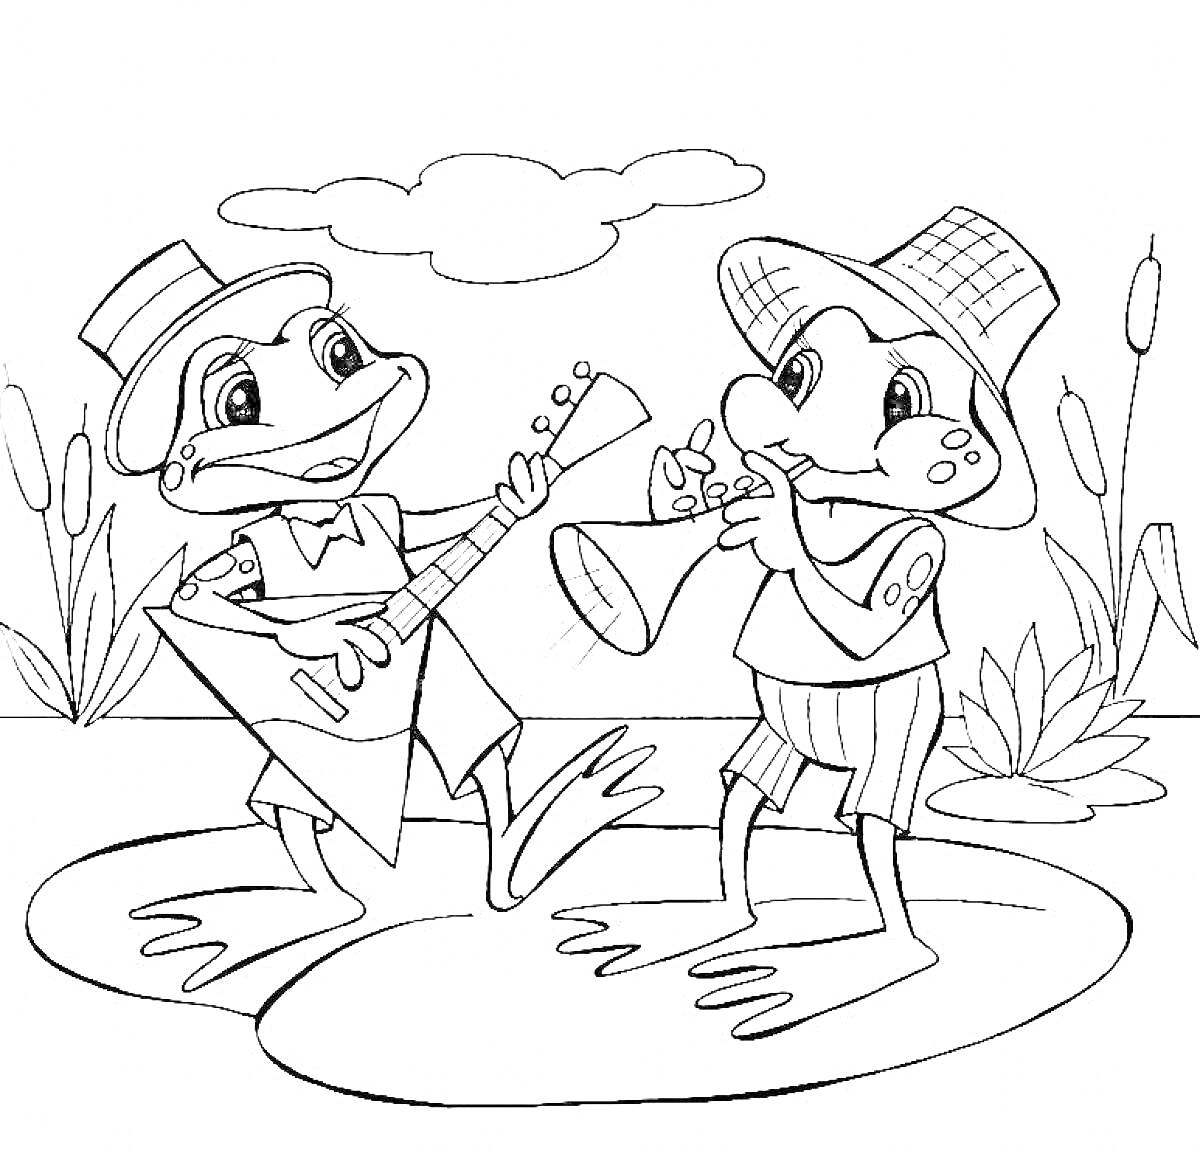 Раскраска Две лягушки с музыкальными инструментами на пруду среди камышей